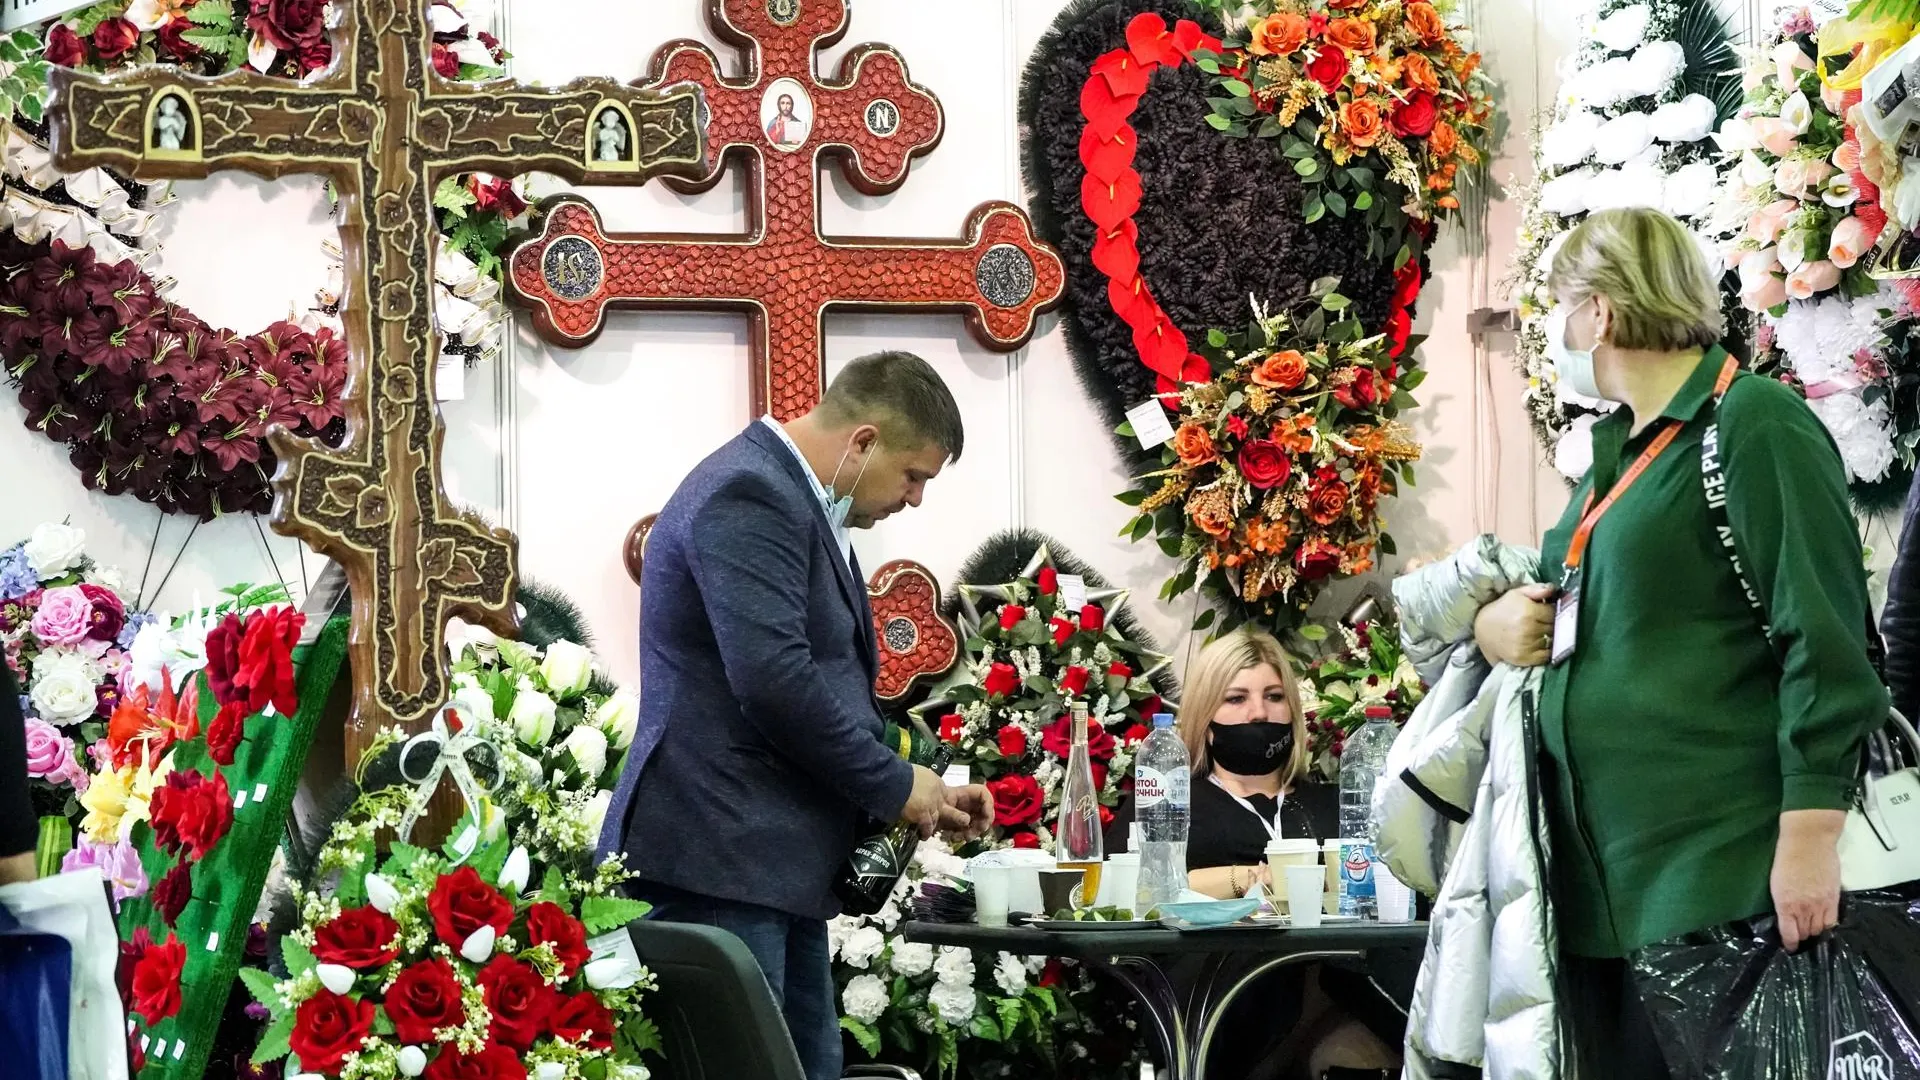 Показ мод в гробах и духи «Похоронное бюро»: что представили на выставке «Некрополь‑2021»